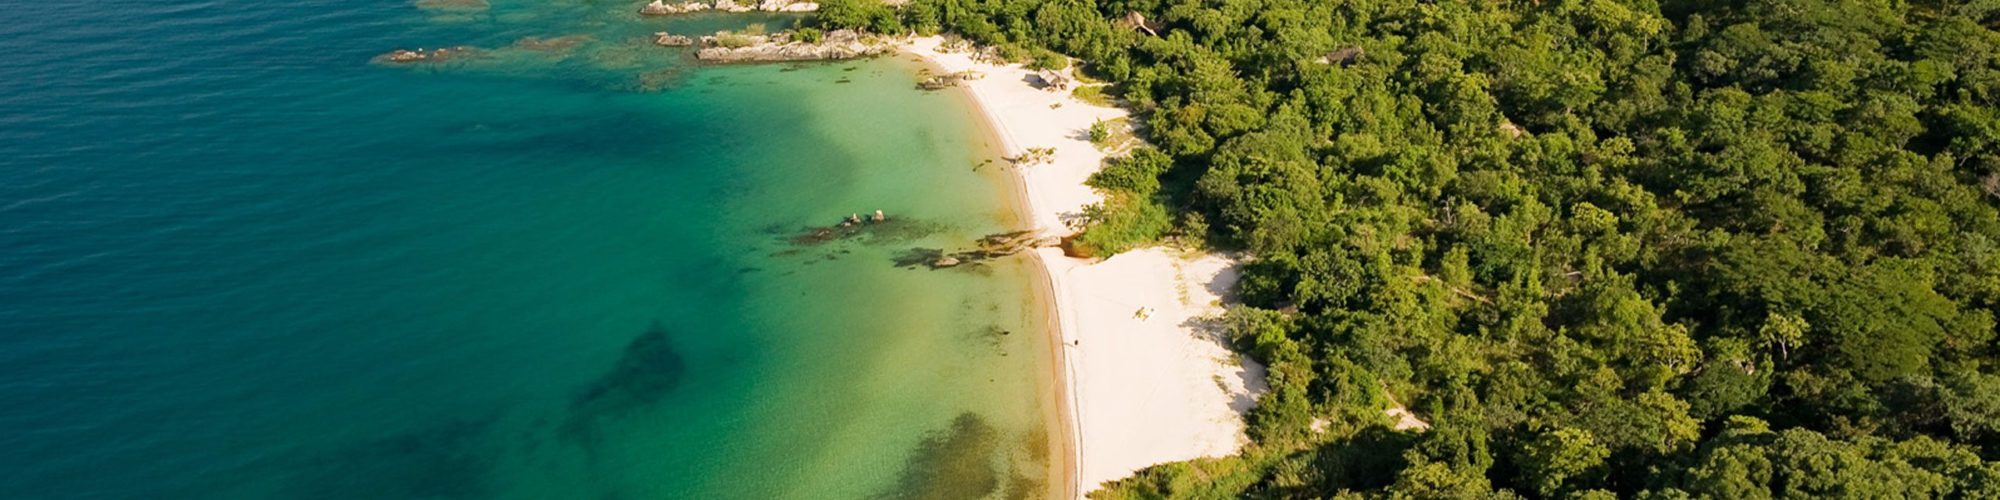 Mozambique travel agents packages deals